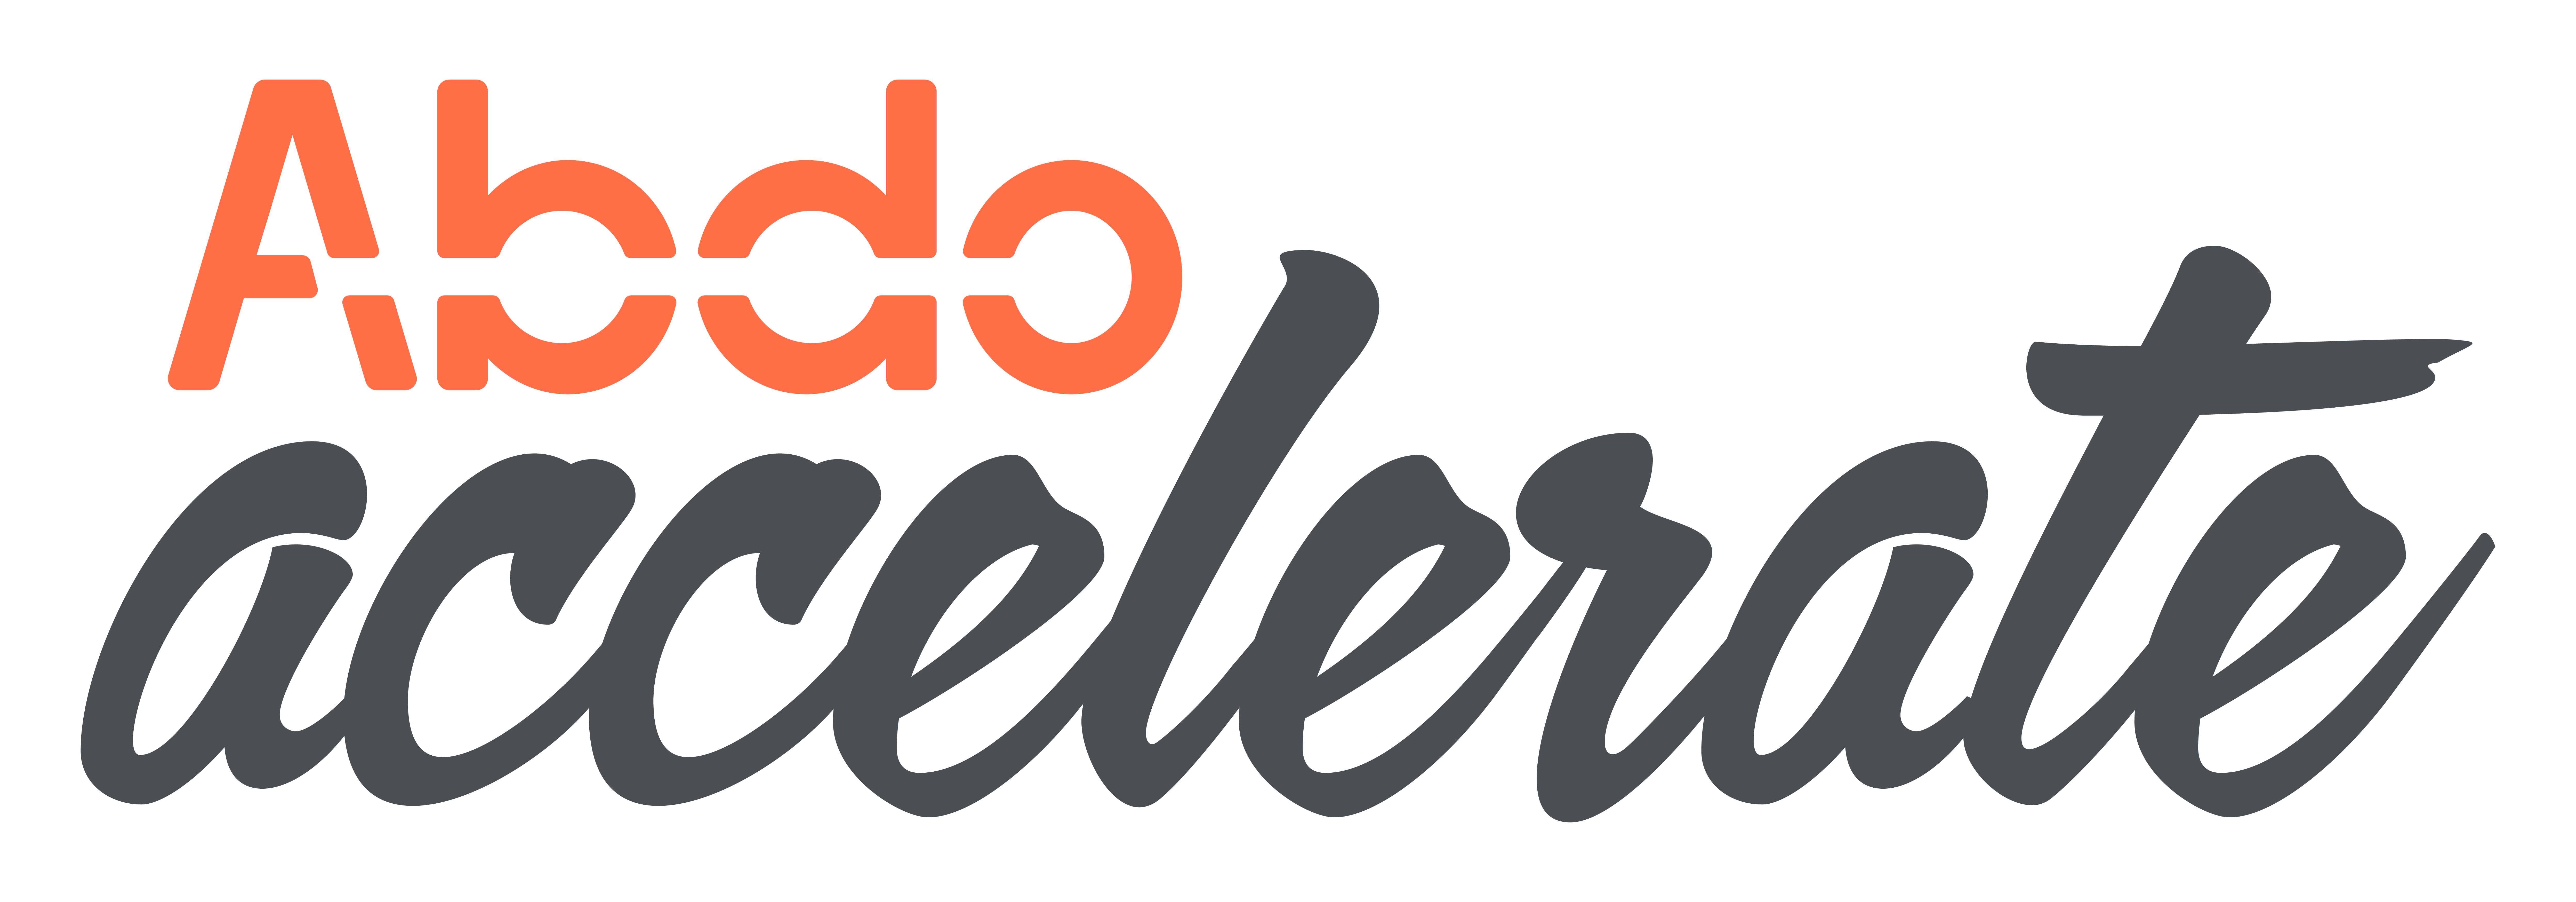 AbdoAccelerate_Logo